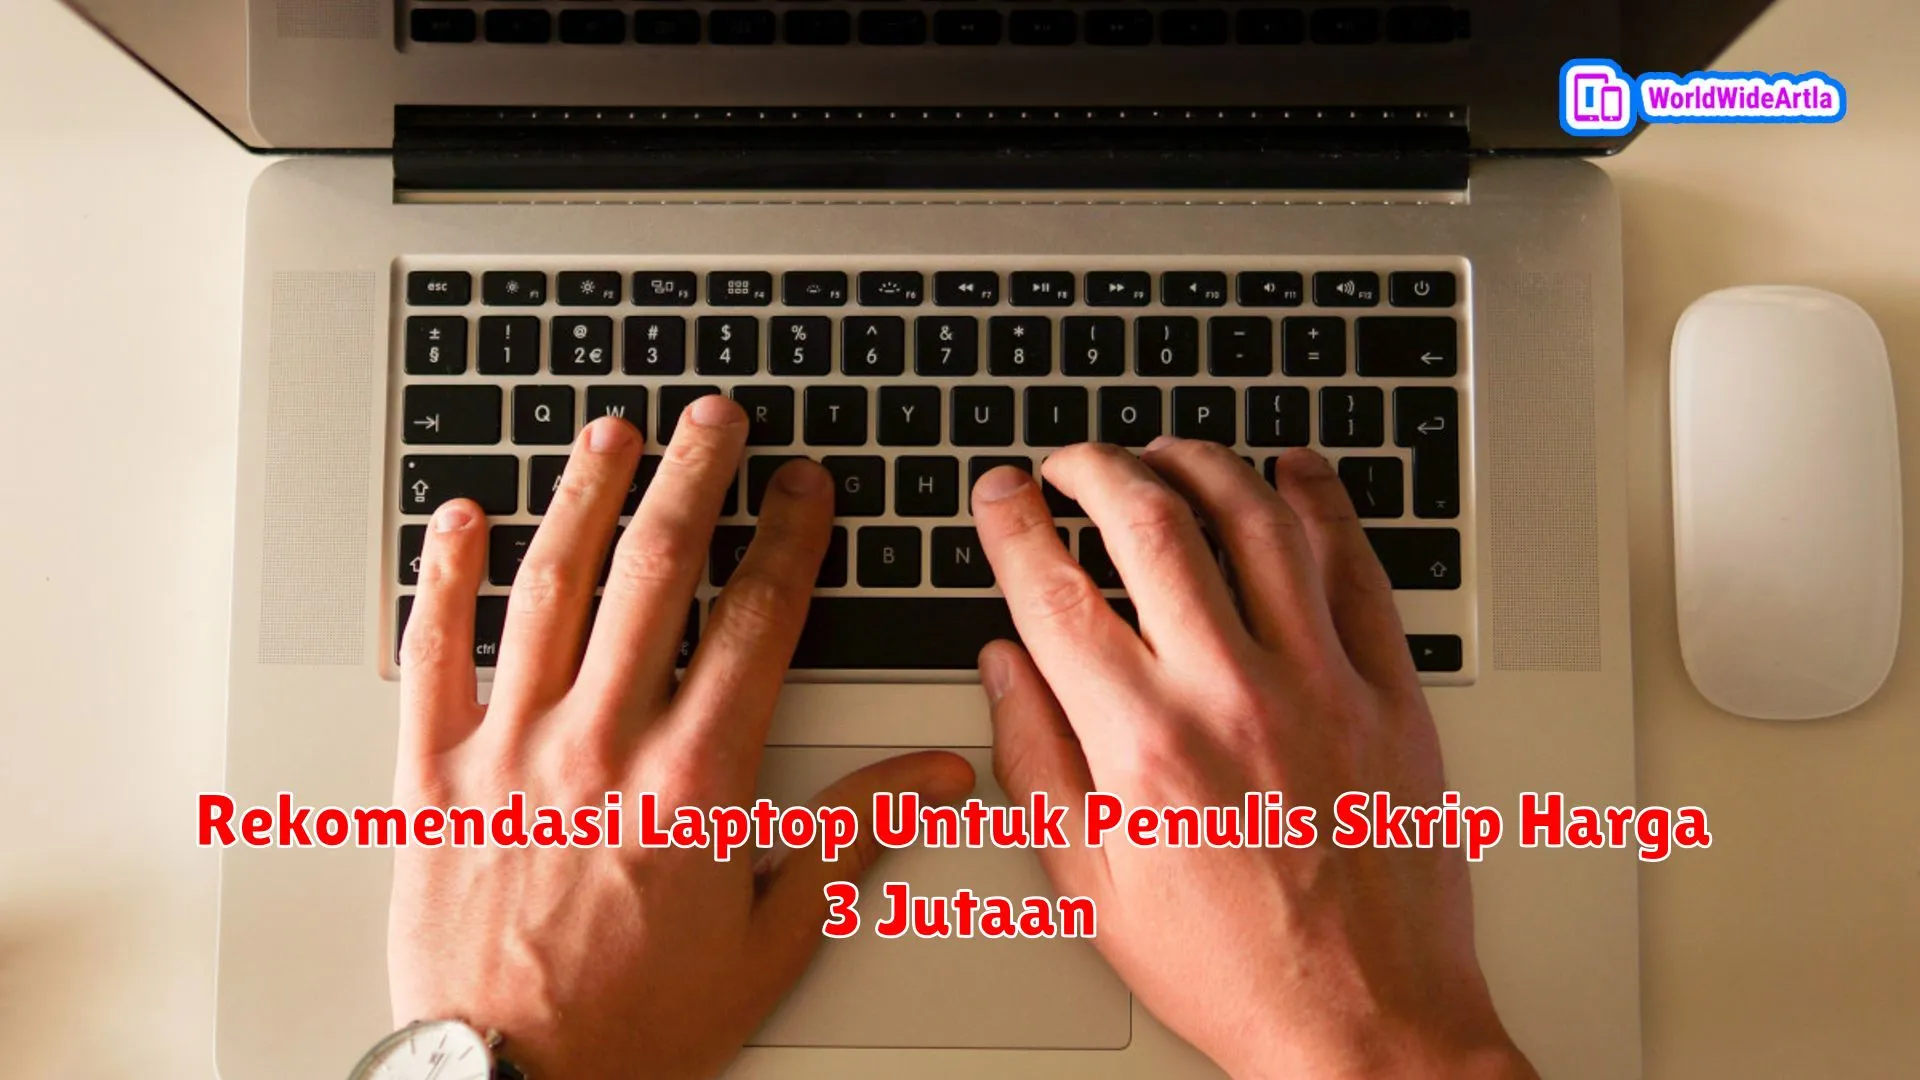 Rekomendasi Laptop Untuk Penulis Skrip Harga 3 Jutaan